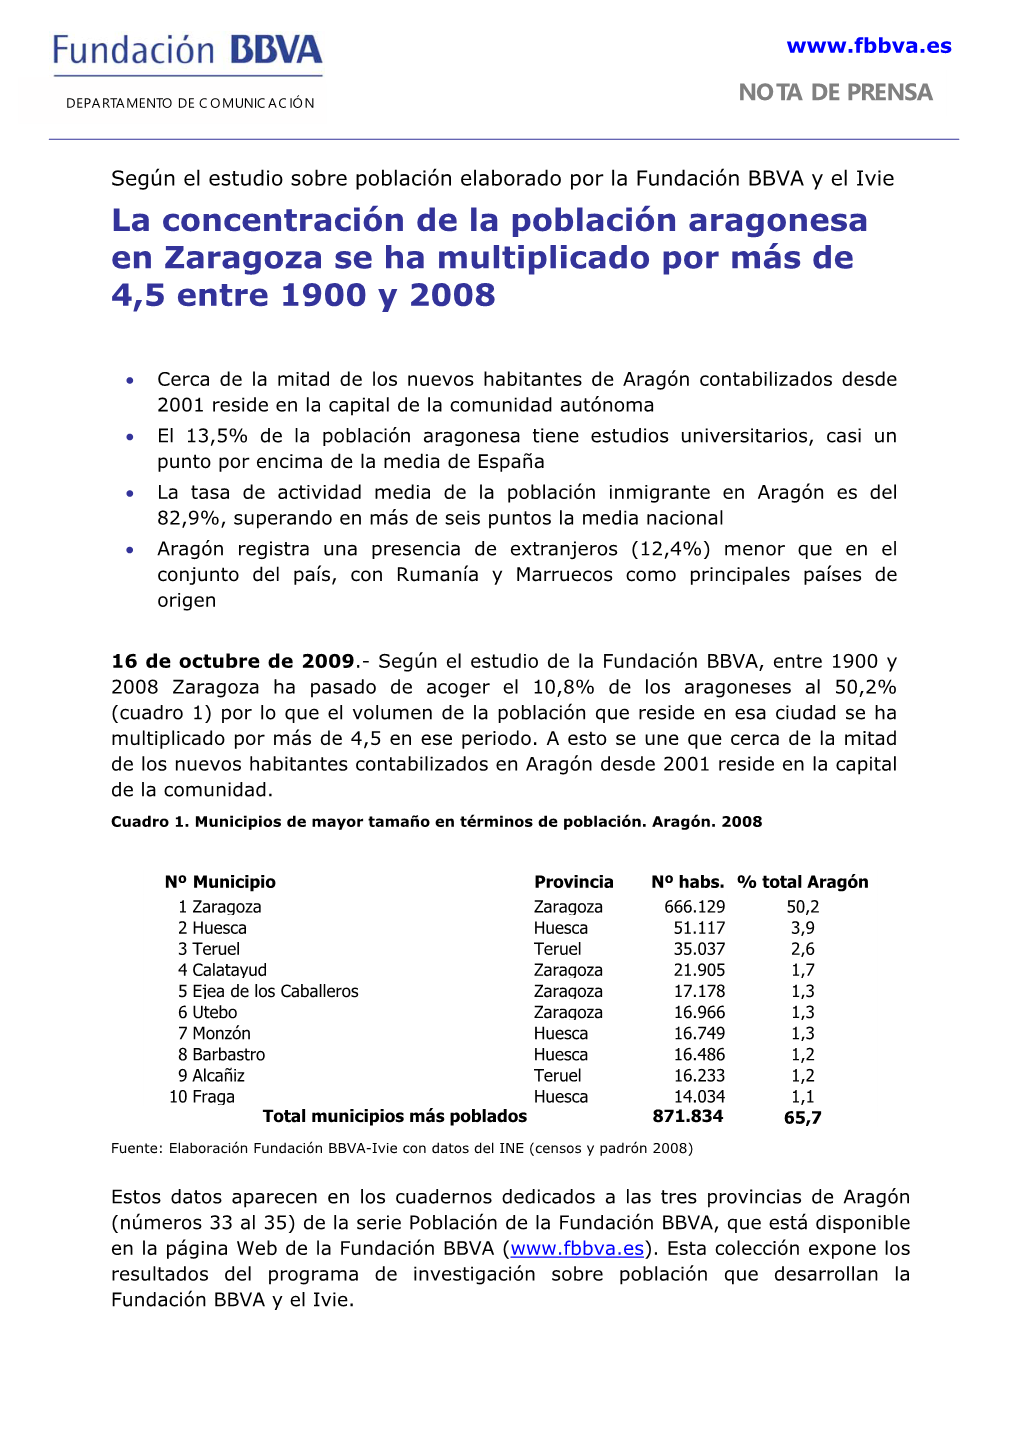 La Concentración De La Población Aragonesa En Zaragoza Se Ha Multiplicado Por Más De 4,5 Entre 1900 Y 2008